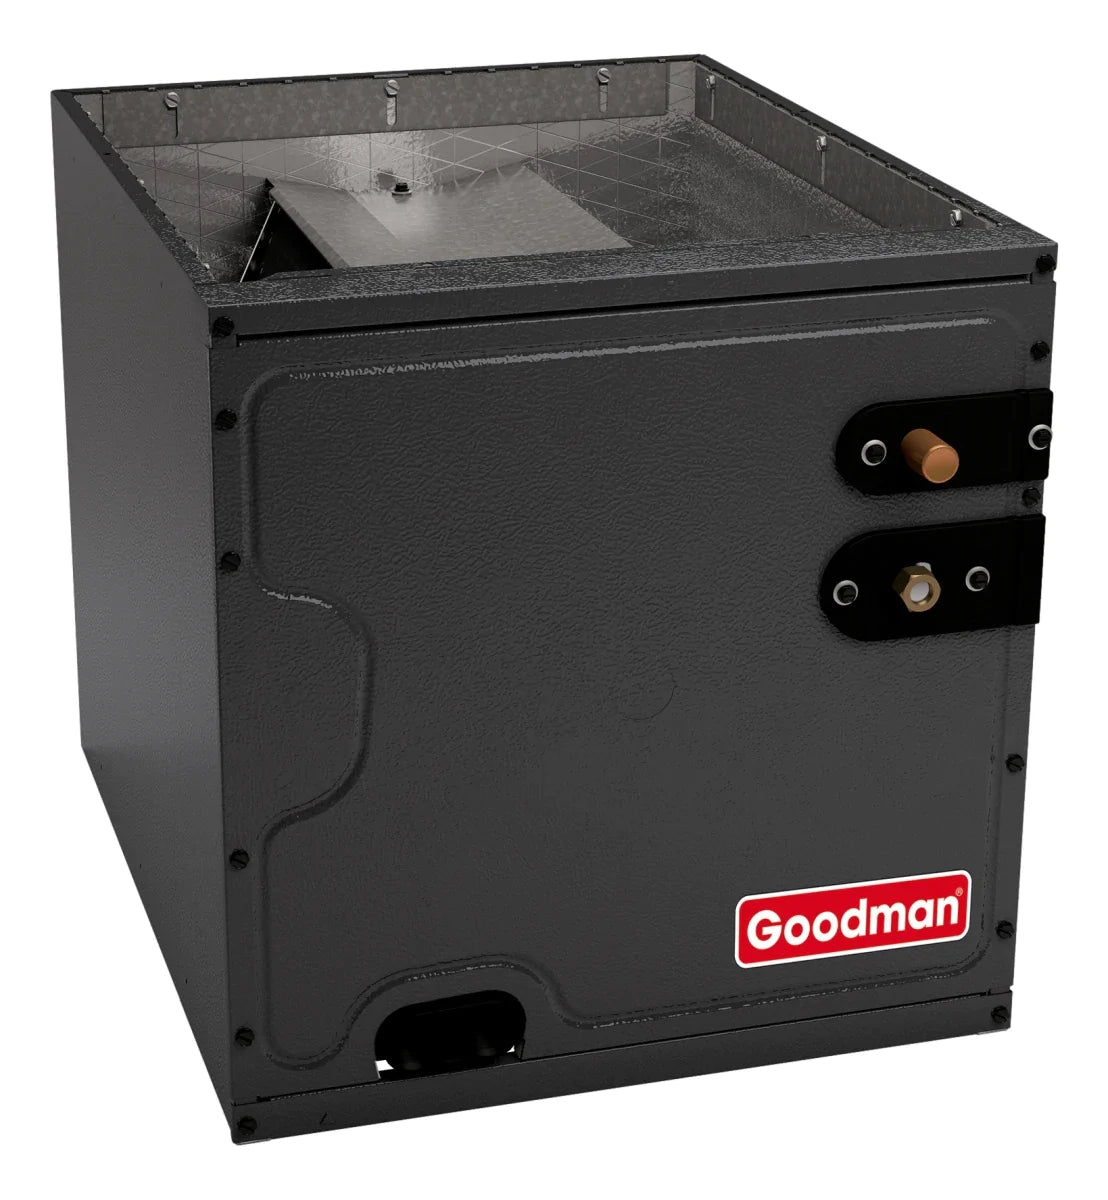 Goodman 3 TON 15 SEER2 Upflow AC system with 80% AFUE 100k BTU 2 stage Low NOx Furnace (GSXM403610, CAPTA4230C4, GMVC801005CX)